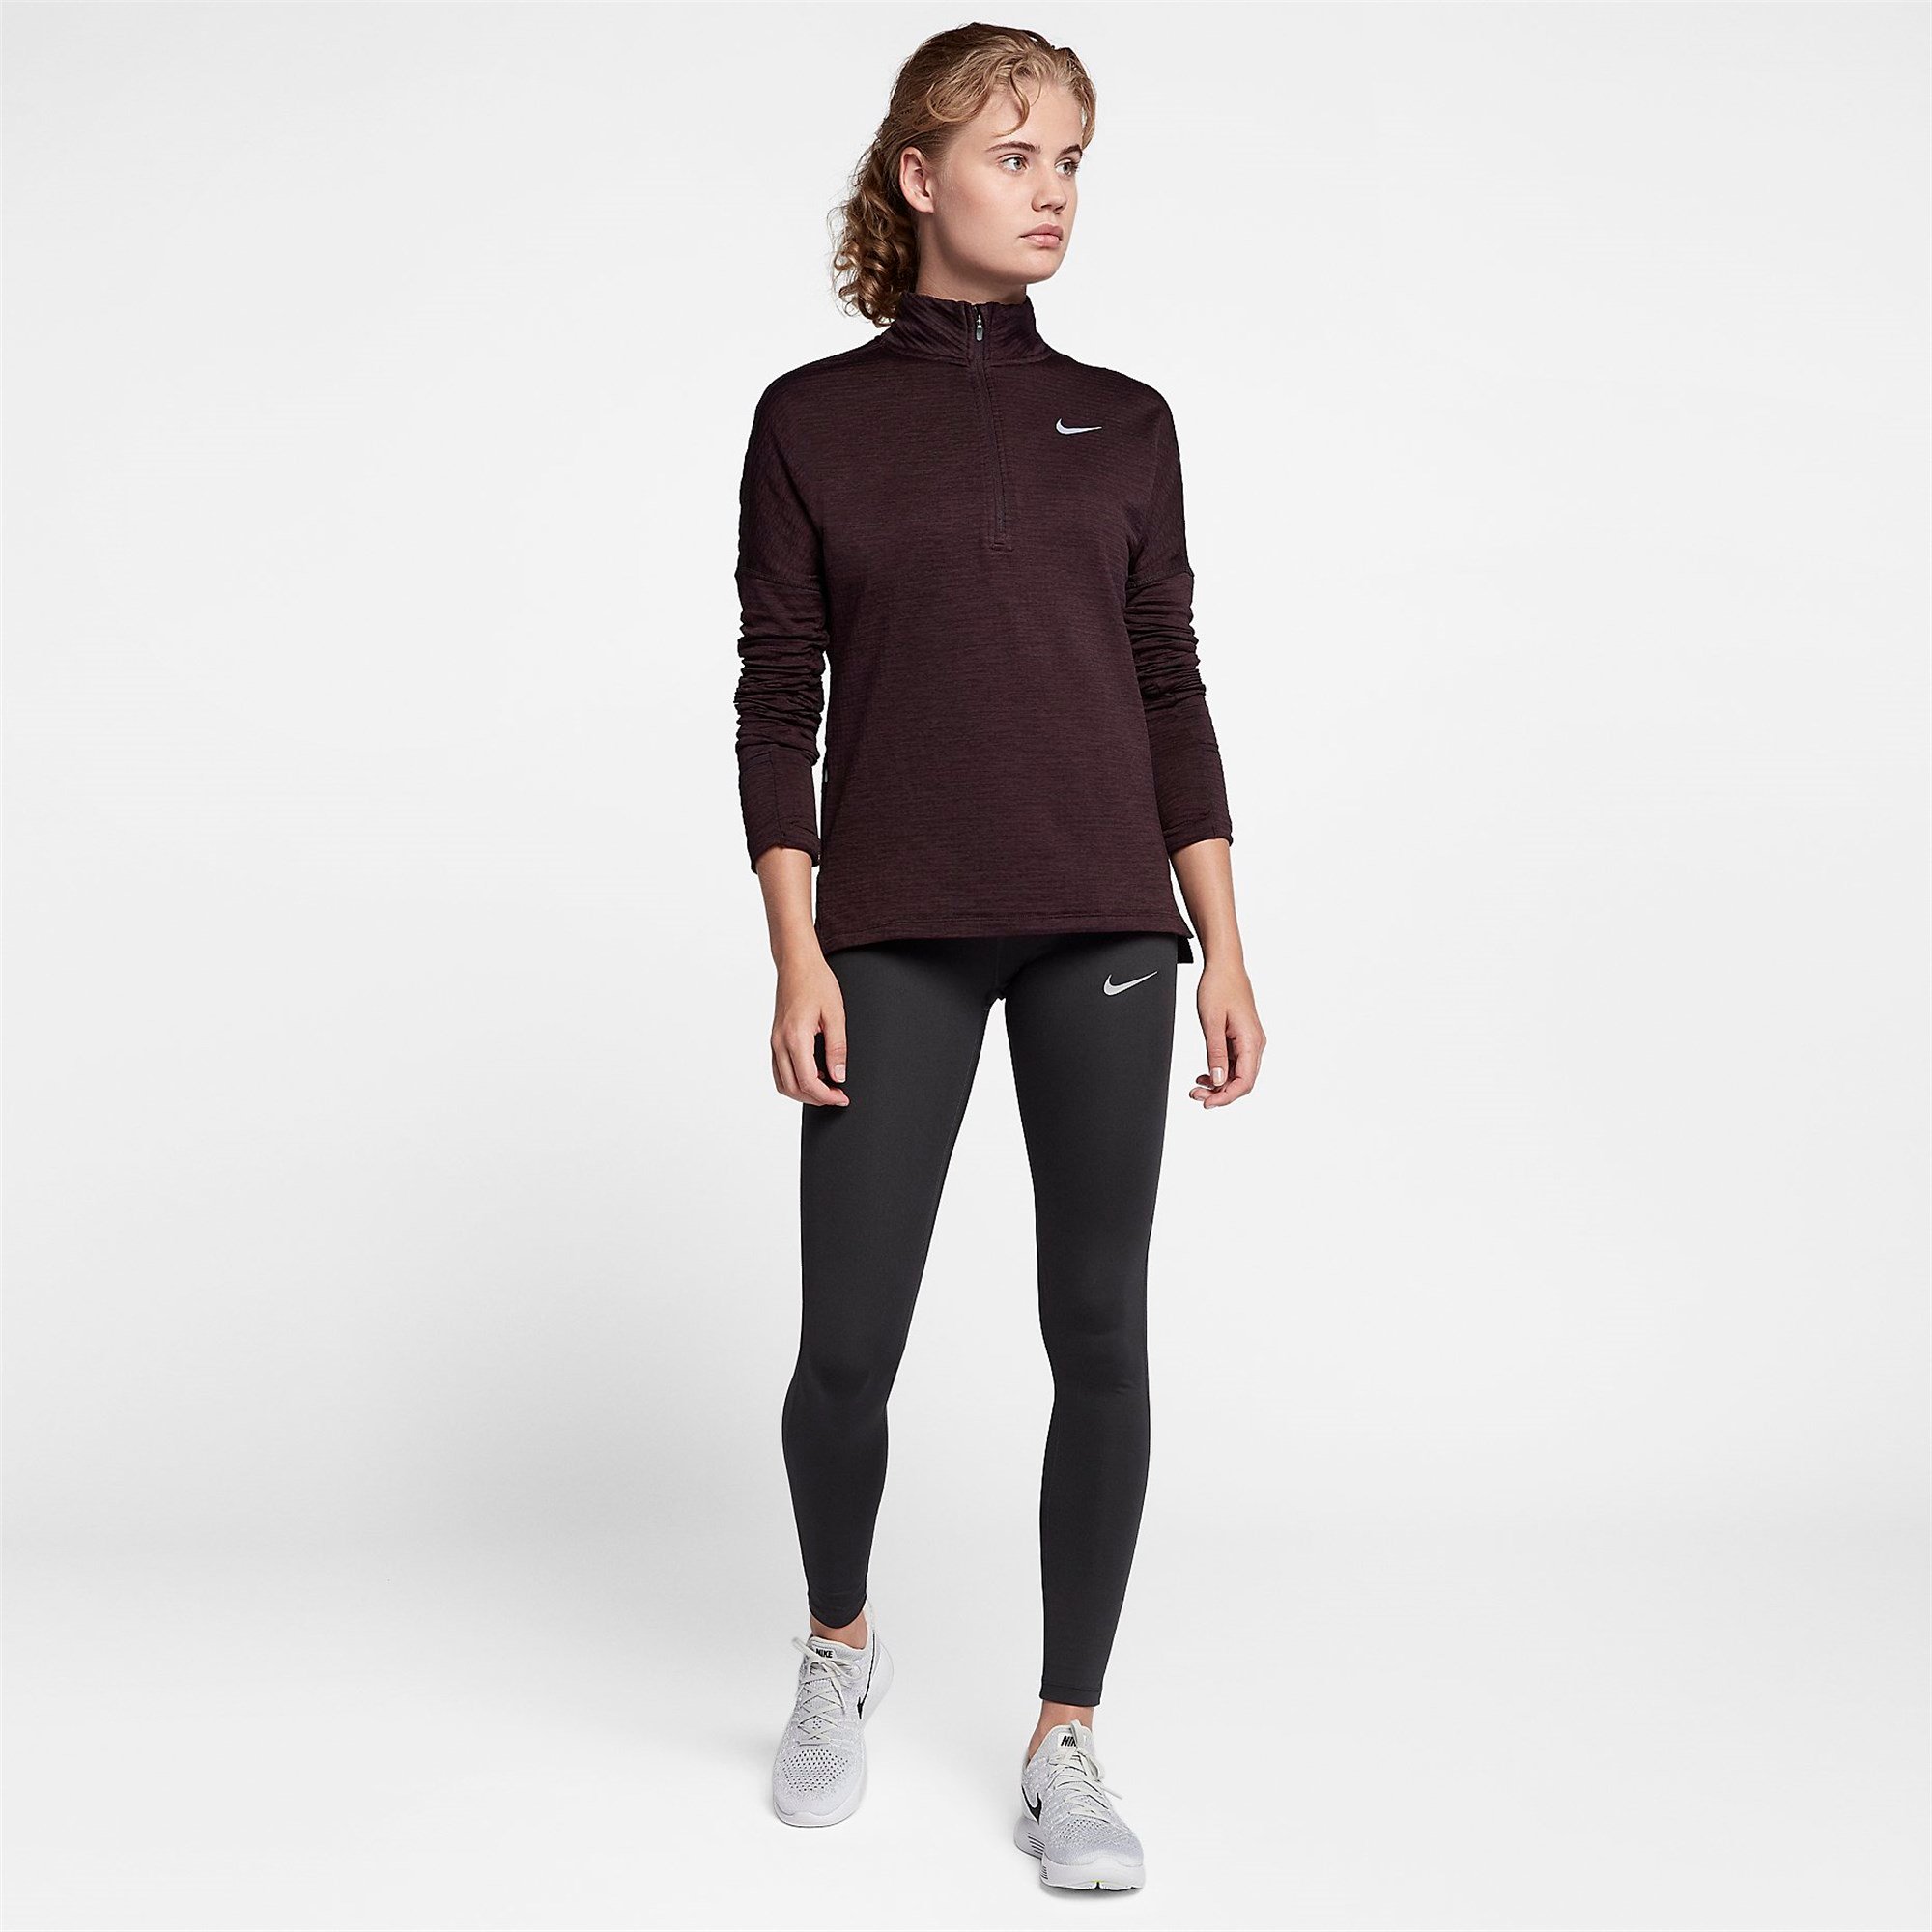 Nike W Nk Thrma Sphr Elmnt Top Hz Kadın Sweatshirt Ürün kodu: 855521-652 |  Etichet Sport